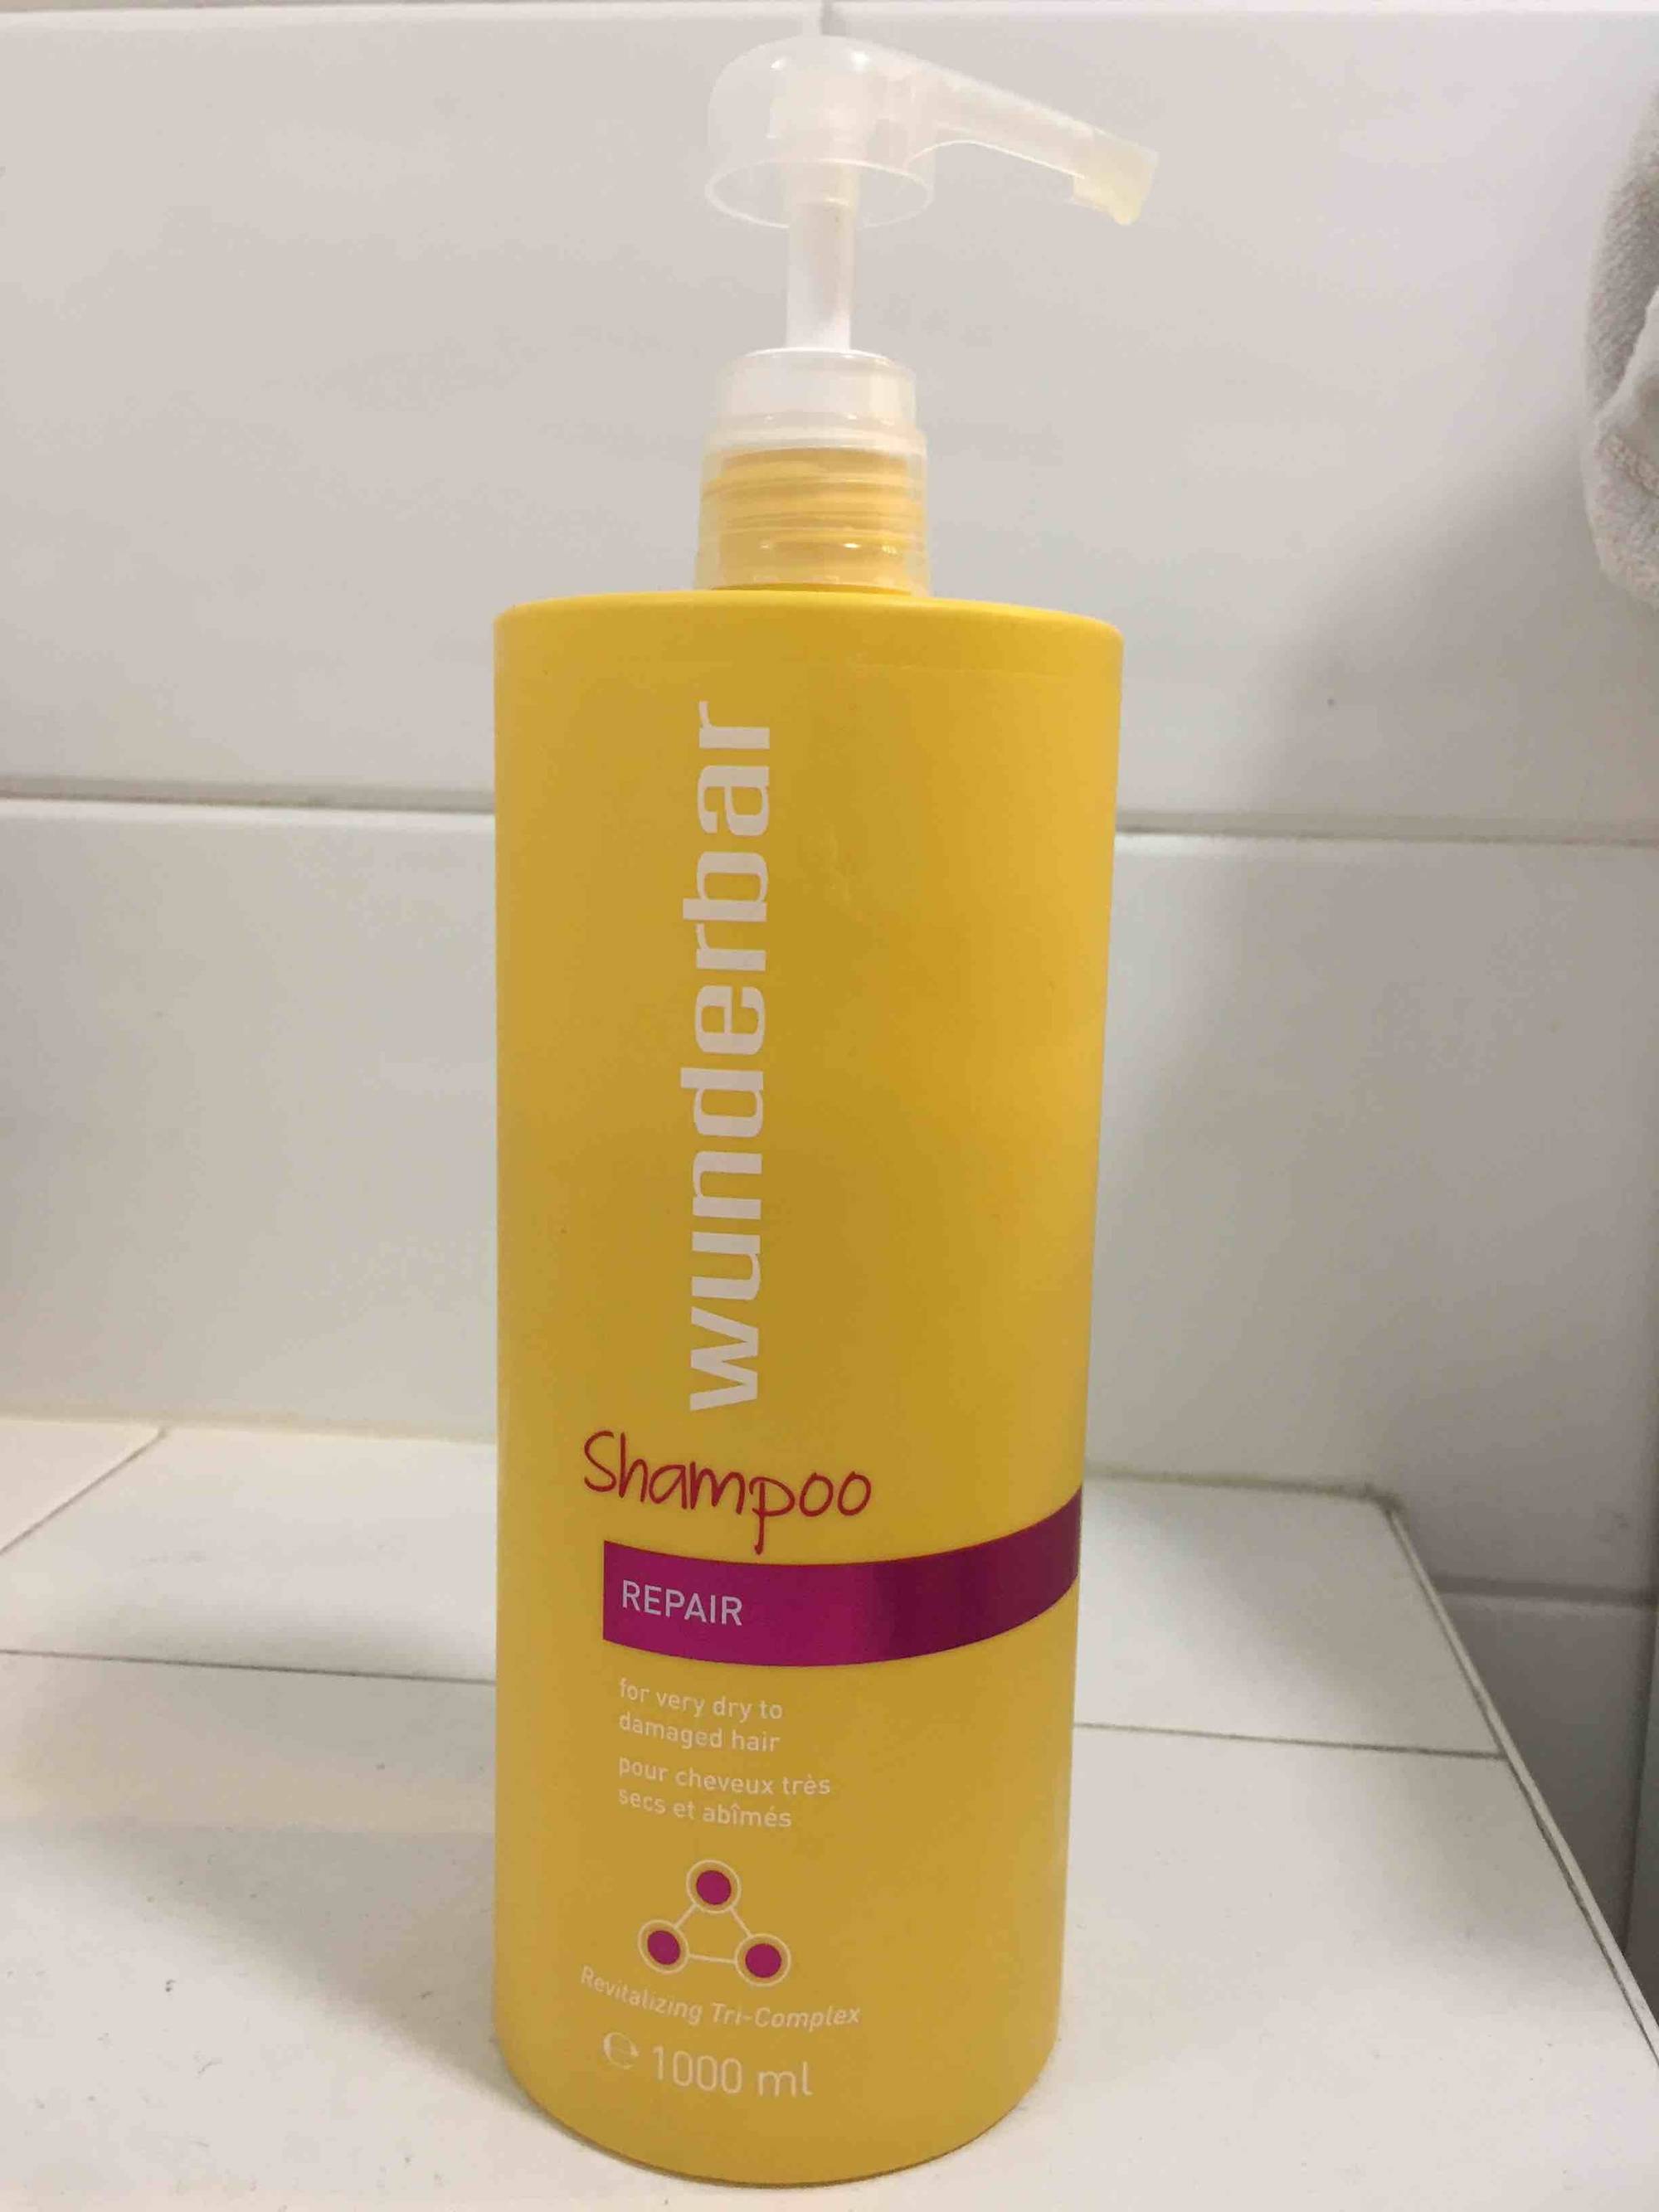 WUNDERBAR - Shampoo repair 